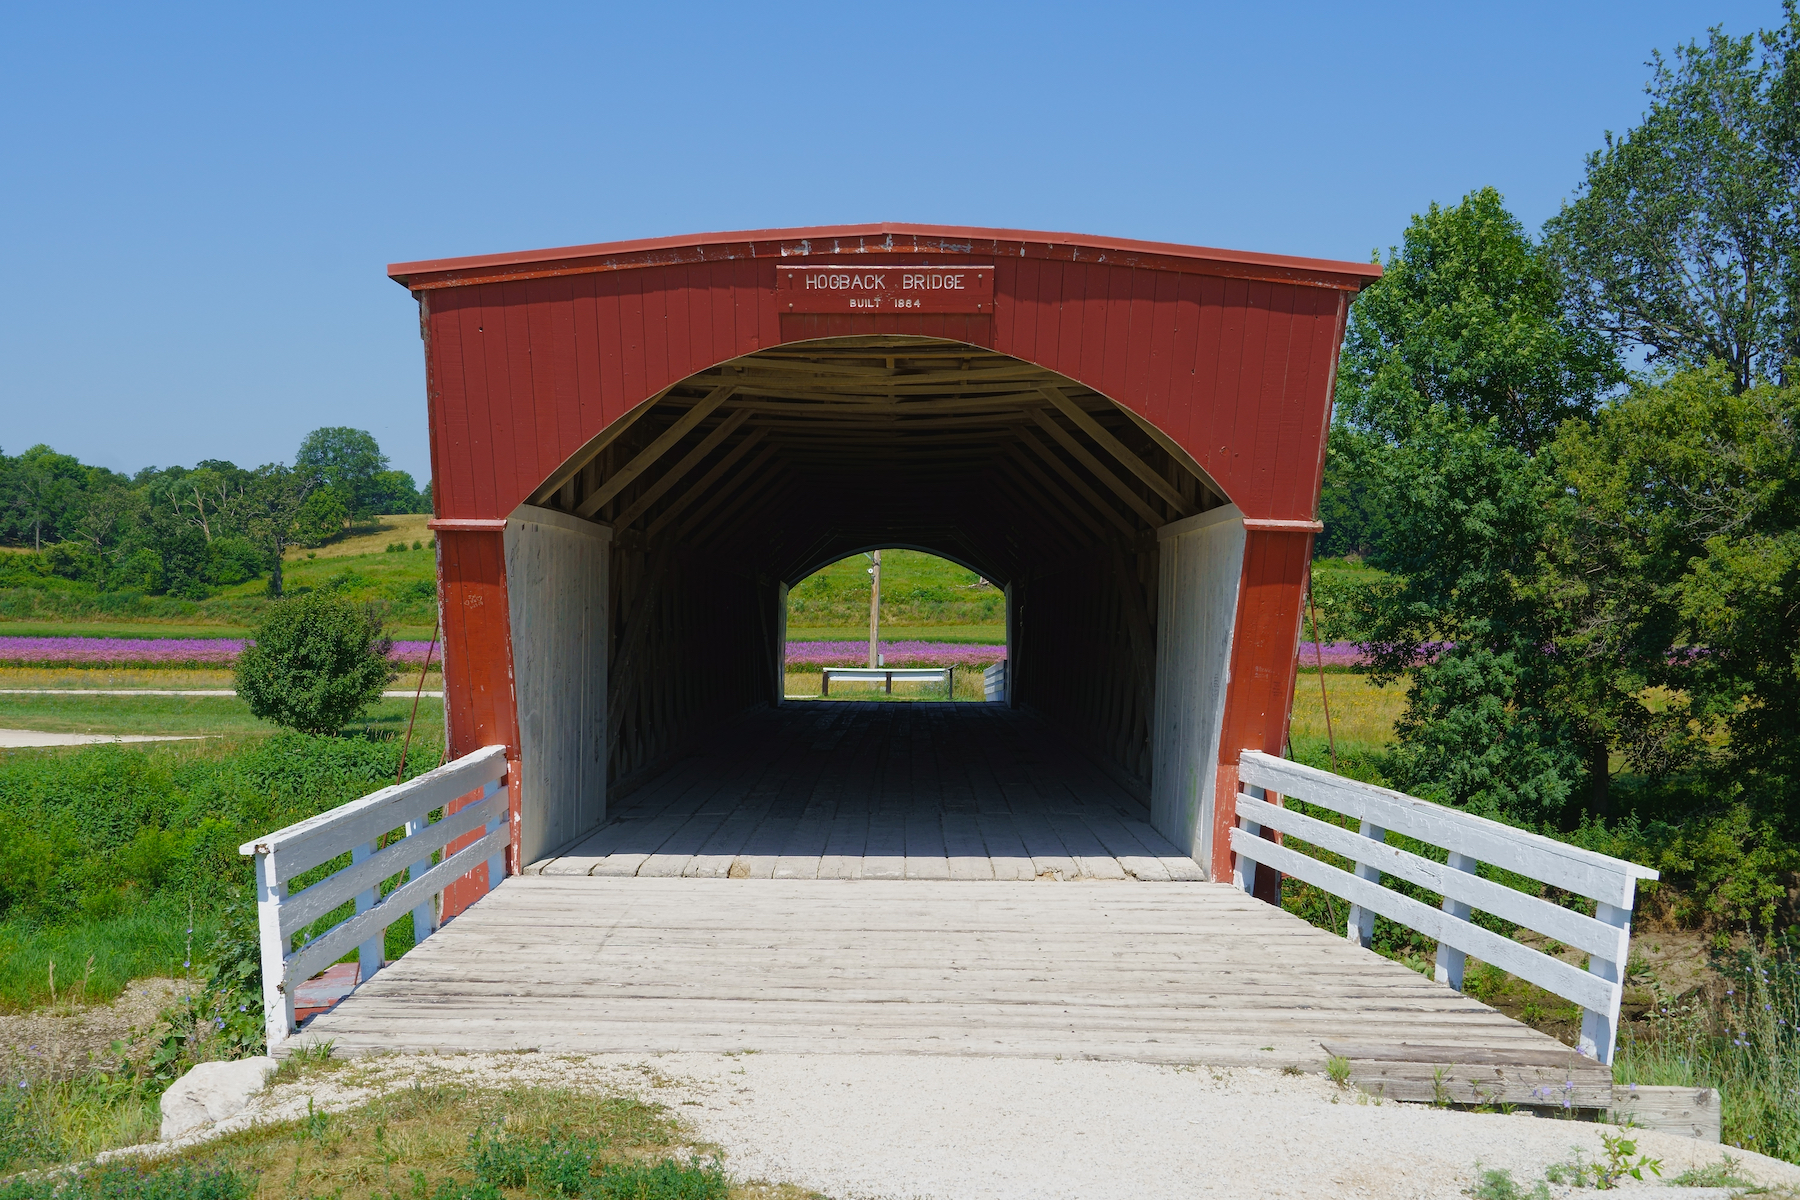 25 paradas perfectas en los puentes cubiertos del condado de Madison - 17